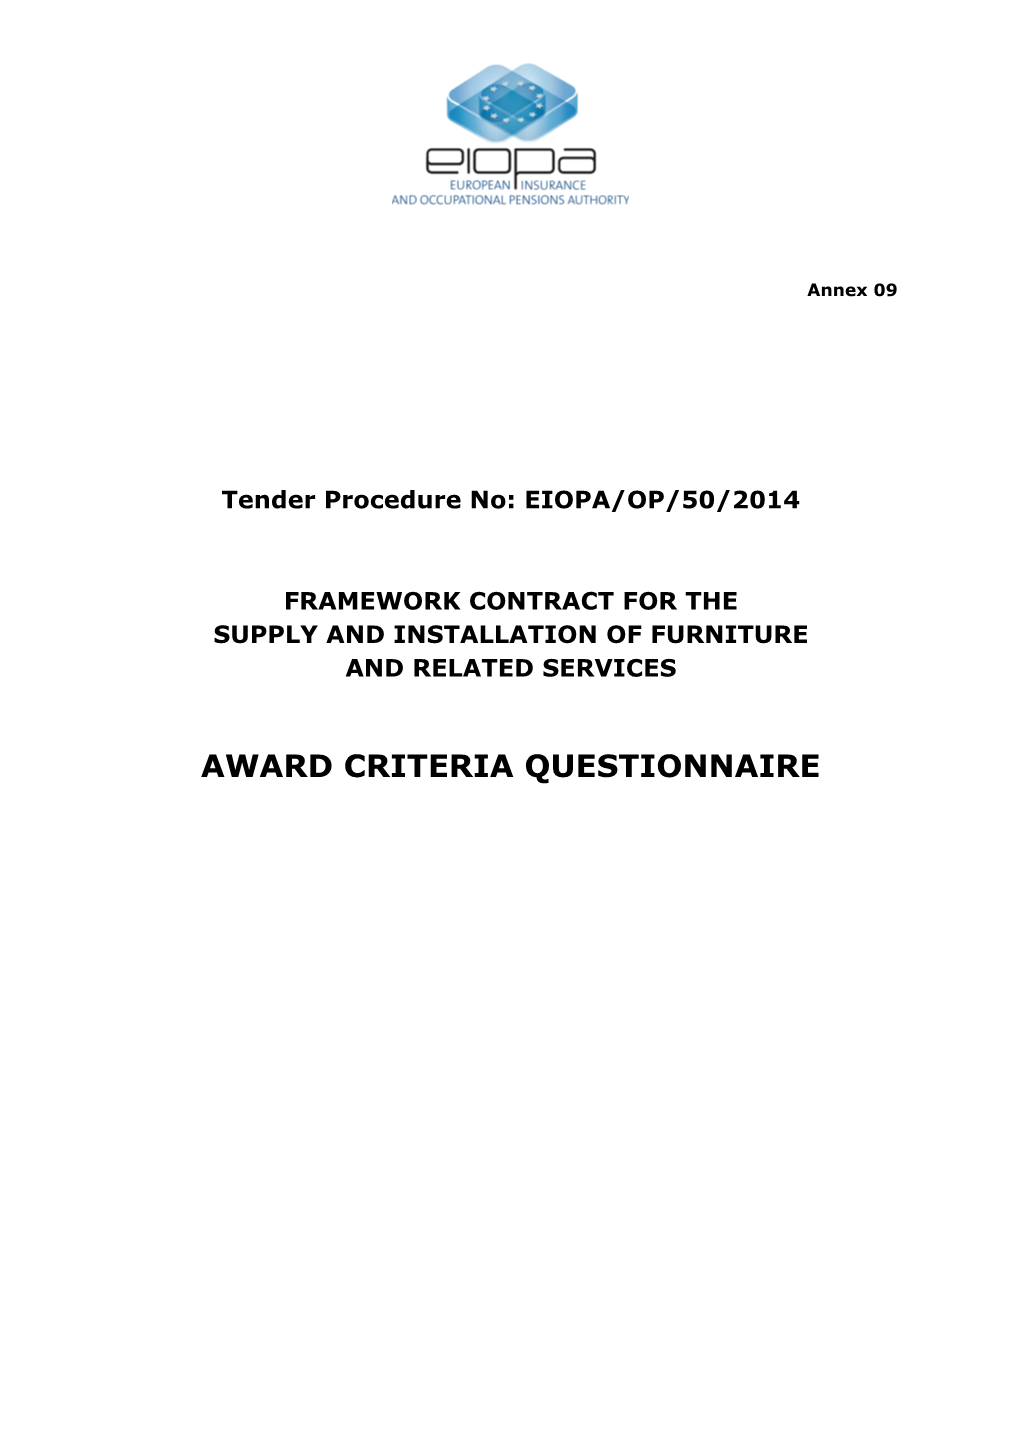 Annex 09 - Award Criteria Questionnaire